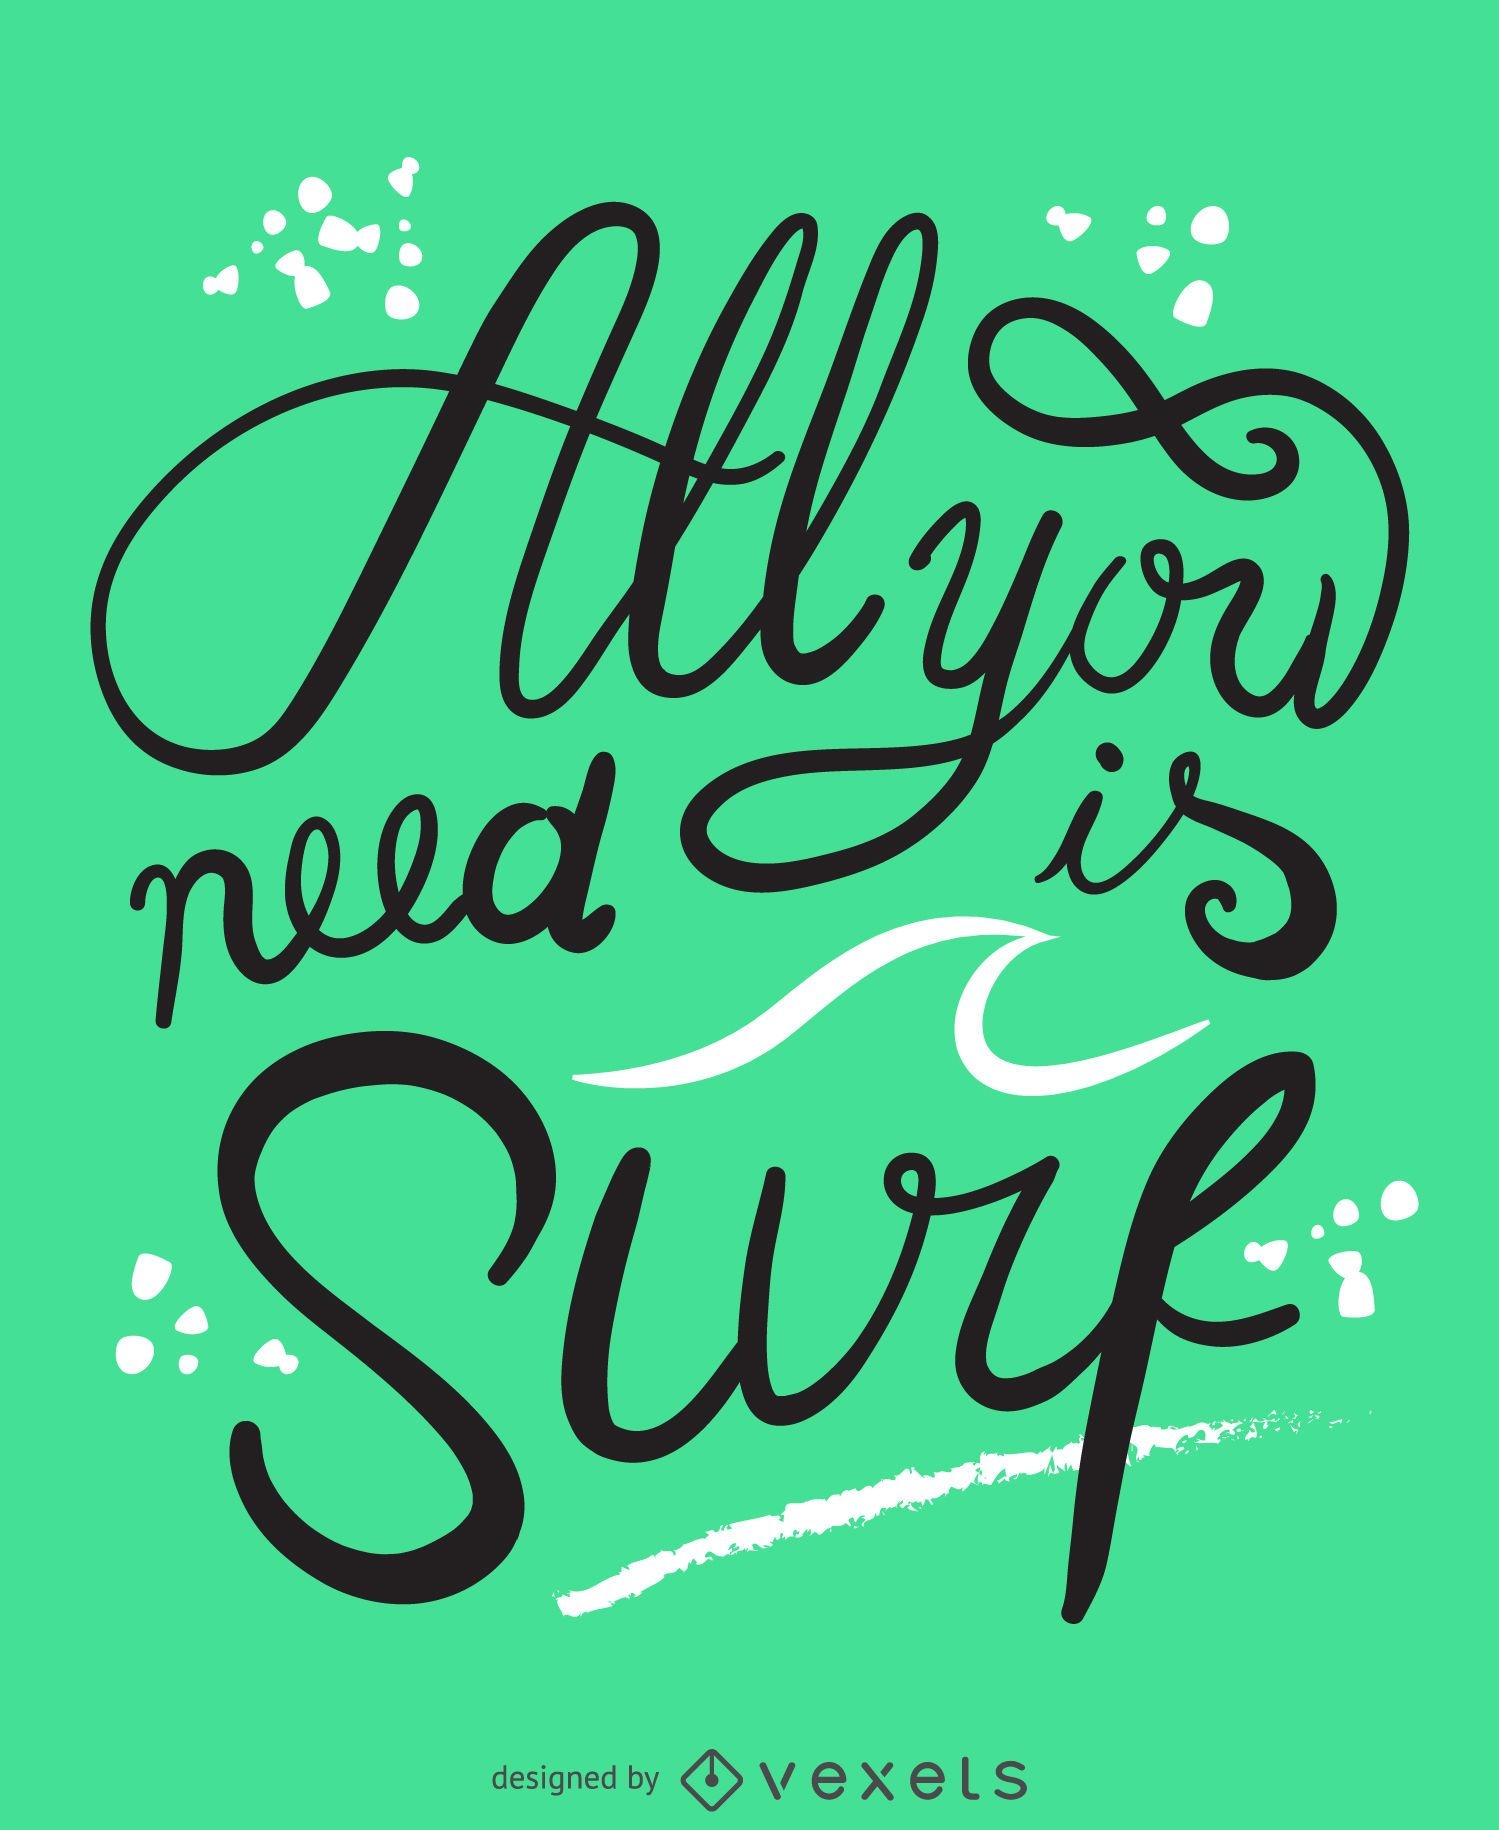 Todo lo que necesitas es un cartel de surf.